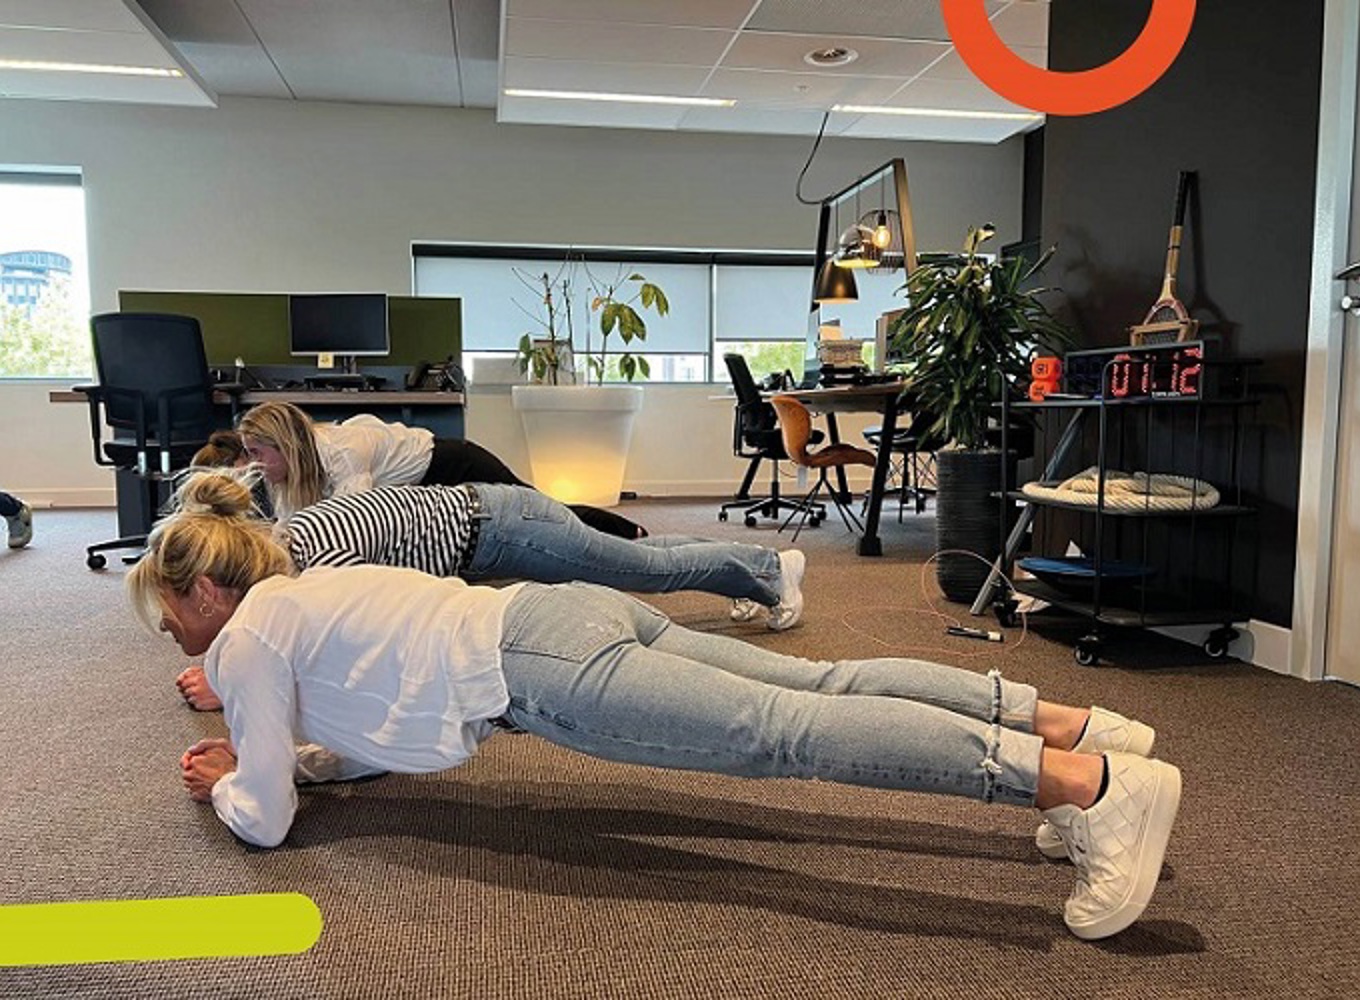 Kruik Mortal in verlegenheid gebracht Workout tip tijdens werk: planken | Bedrijfsfitness Nederland